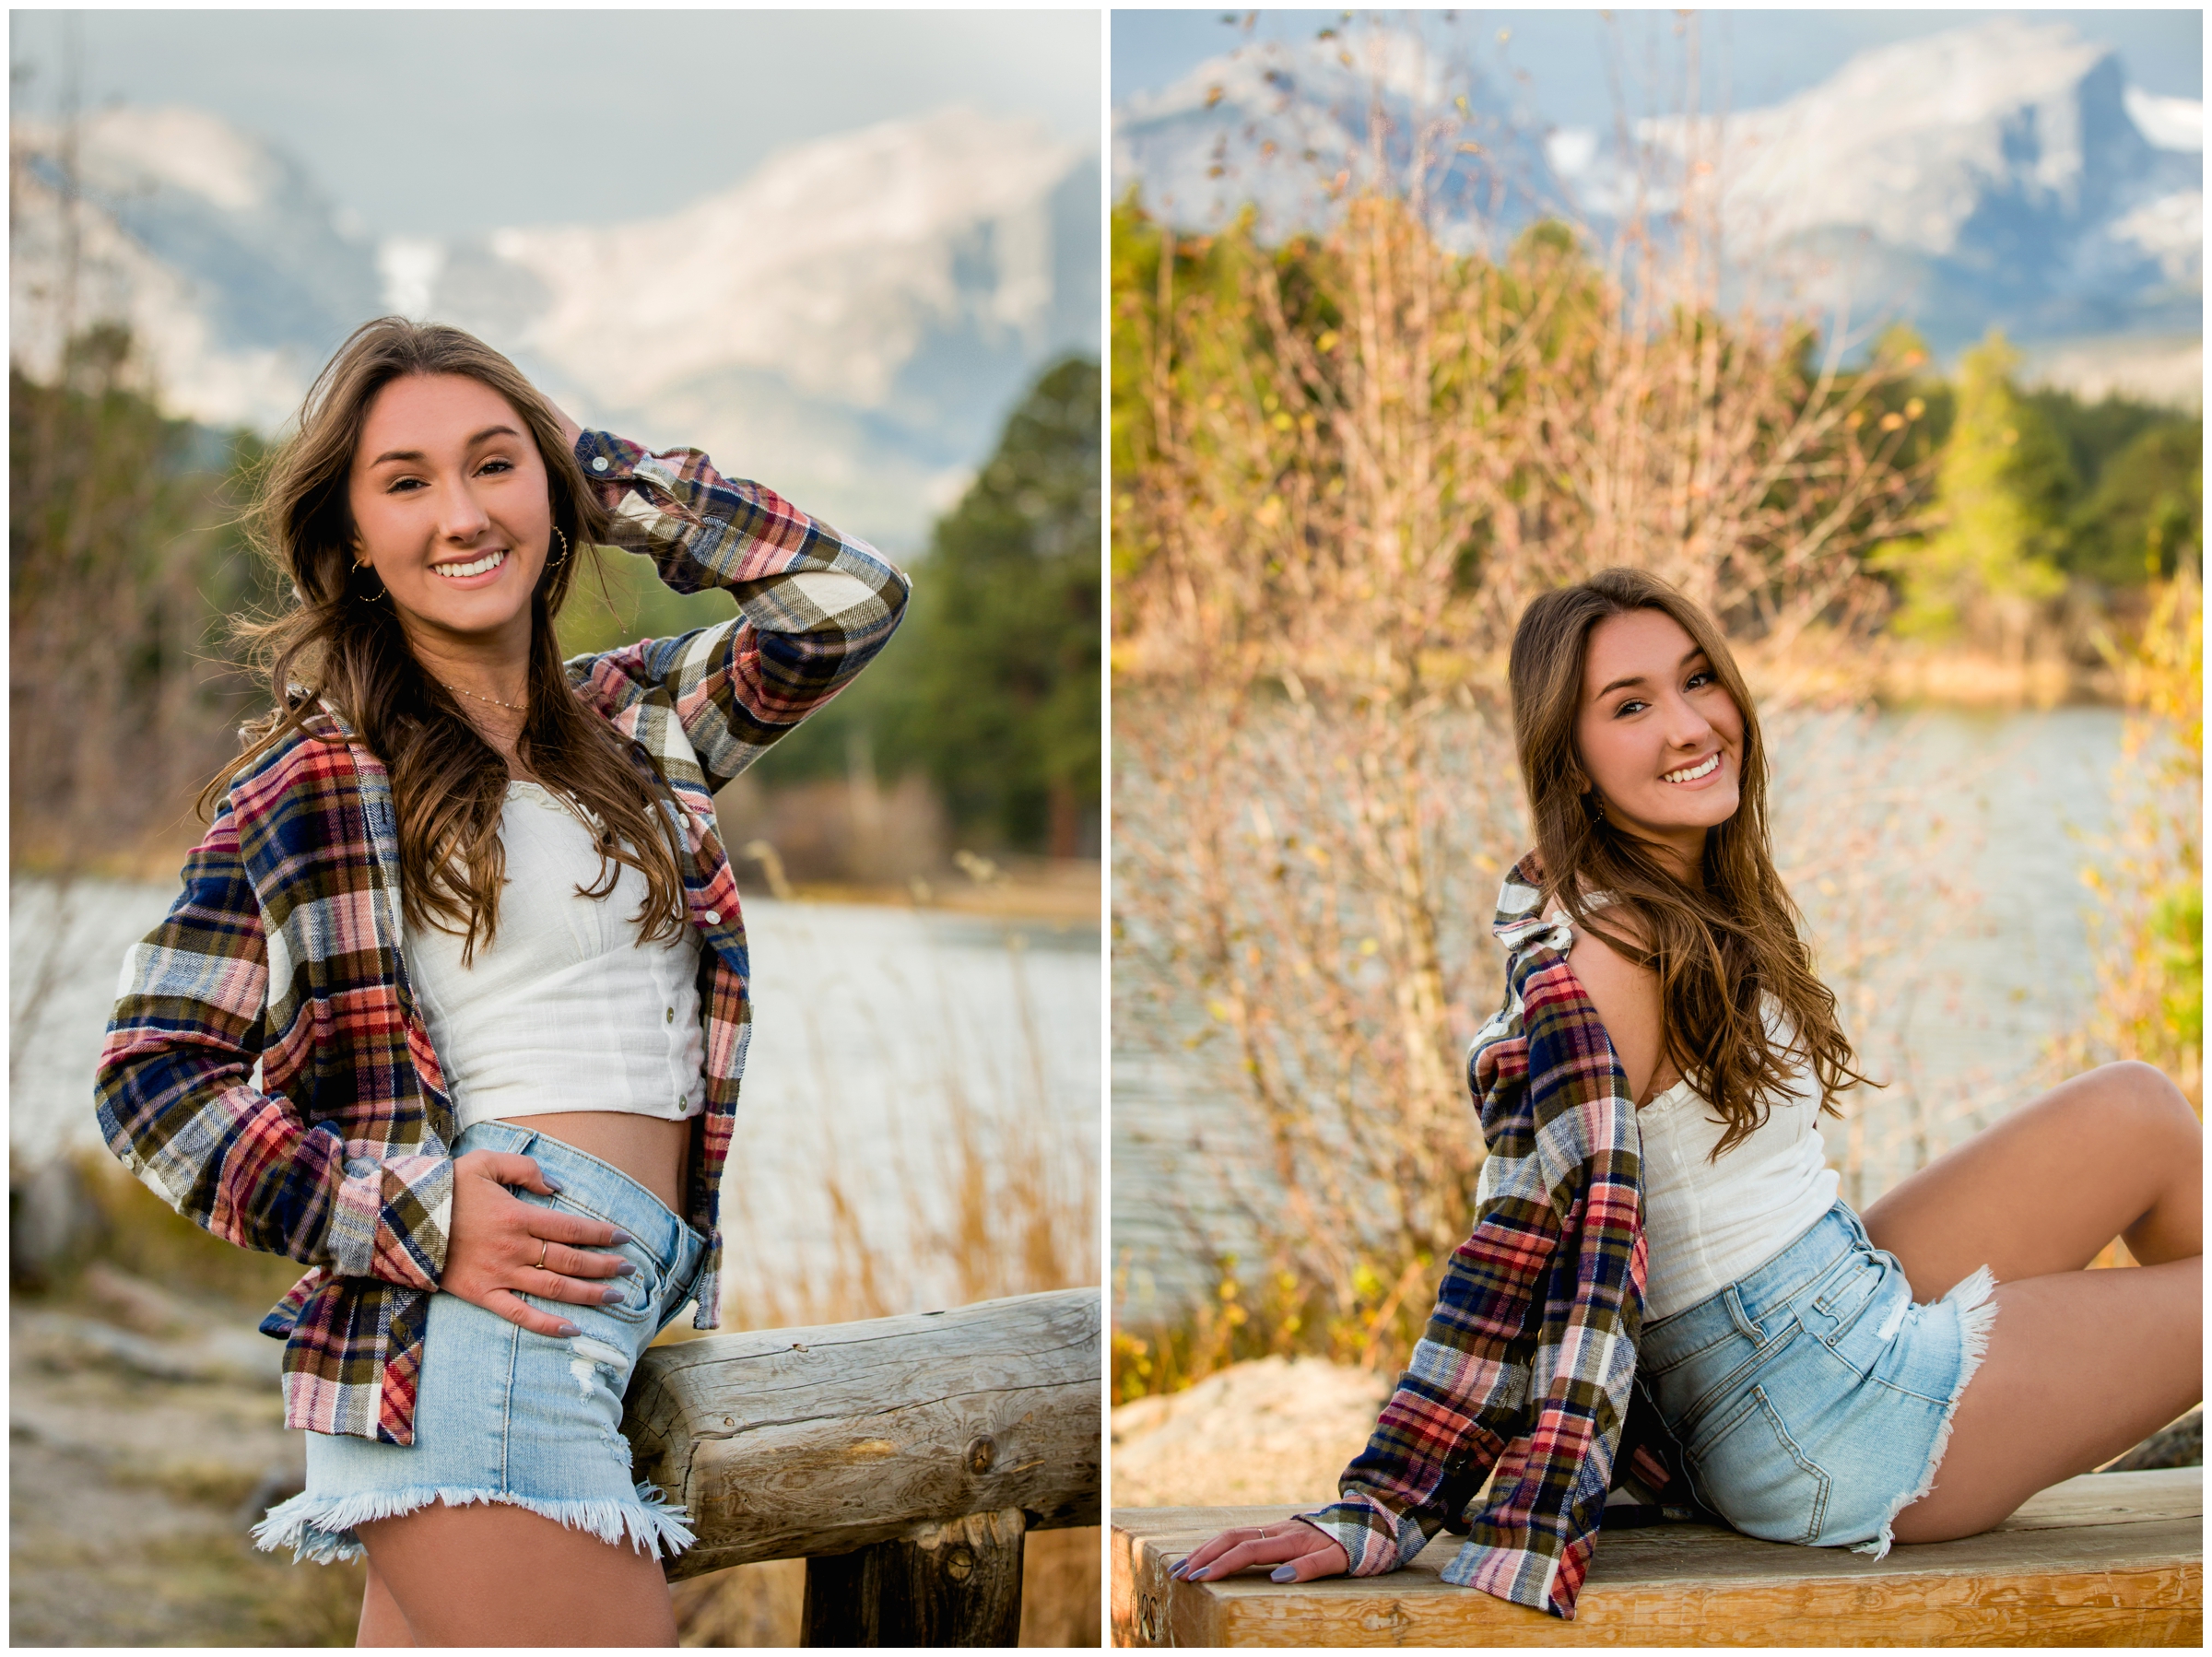 RMNP senior photos at Sprague Lake and Moraine Park by Estes Park Colorado photographer Plum Pretty Photography